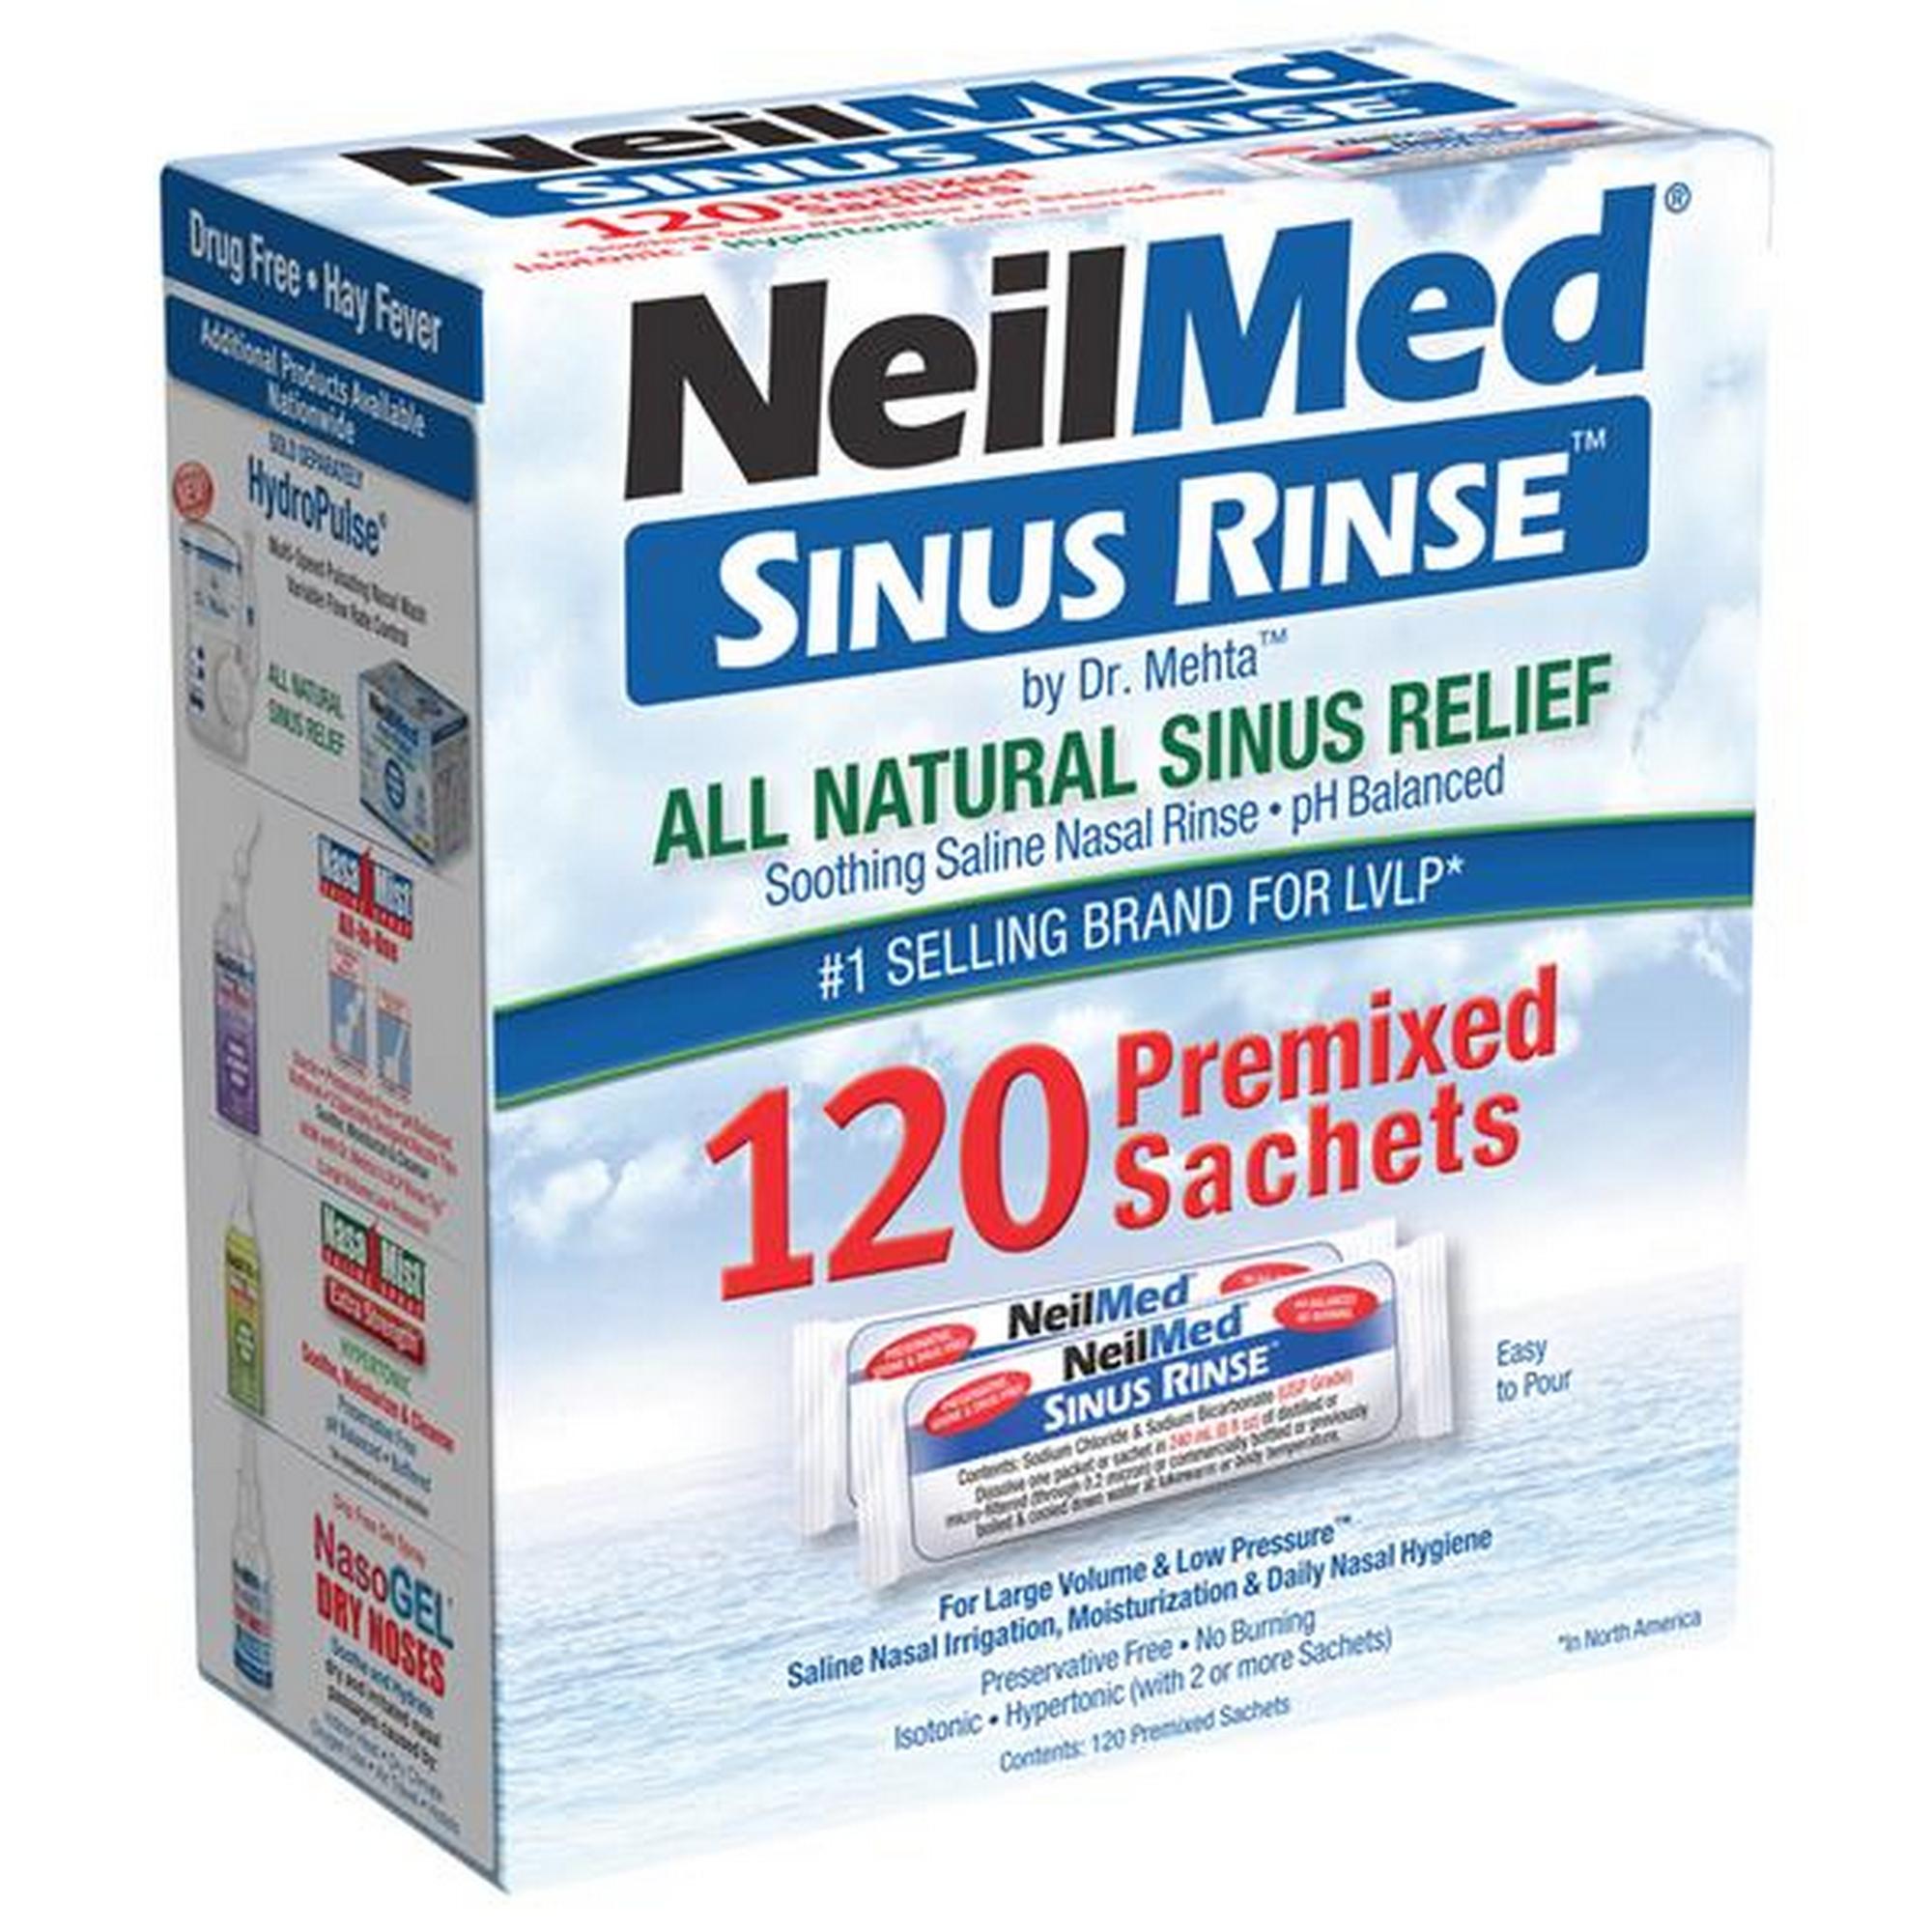 NeilMed Sinus Rinse 120 Pre-mixed Sachets